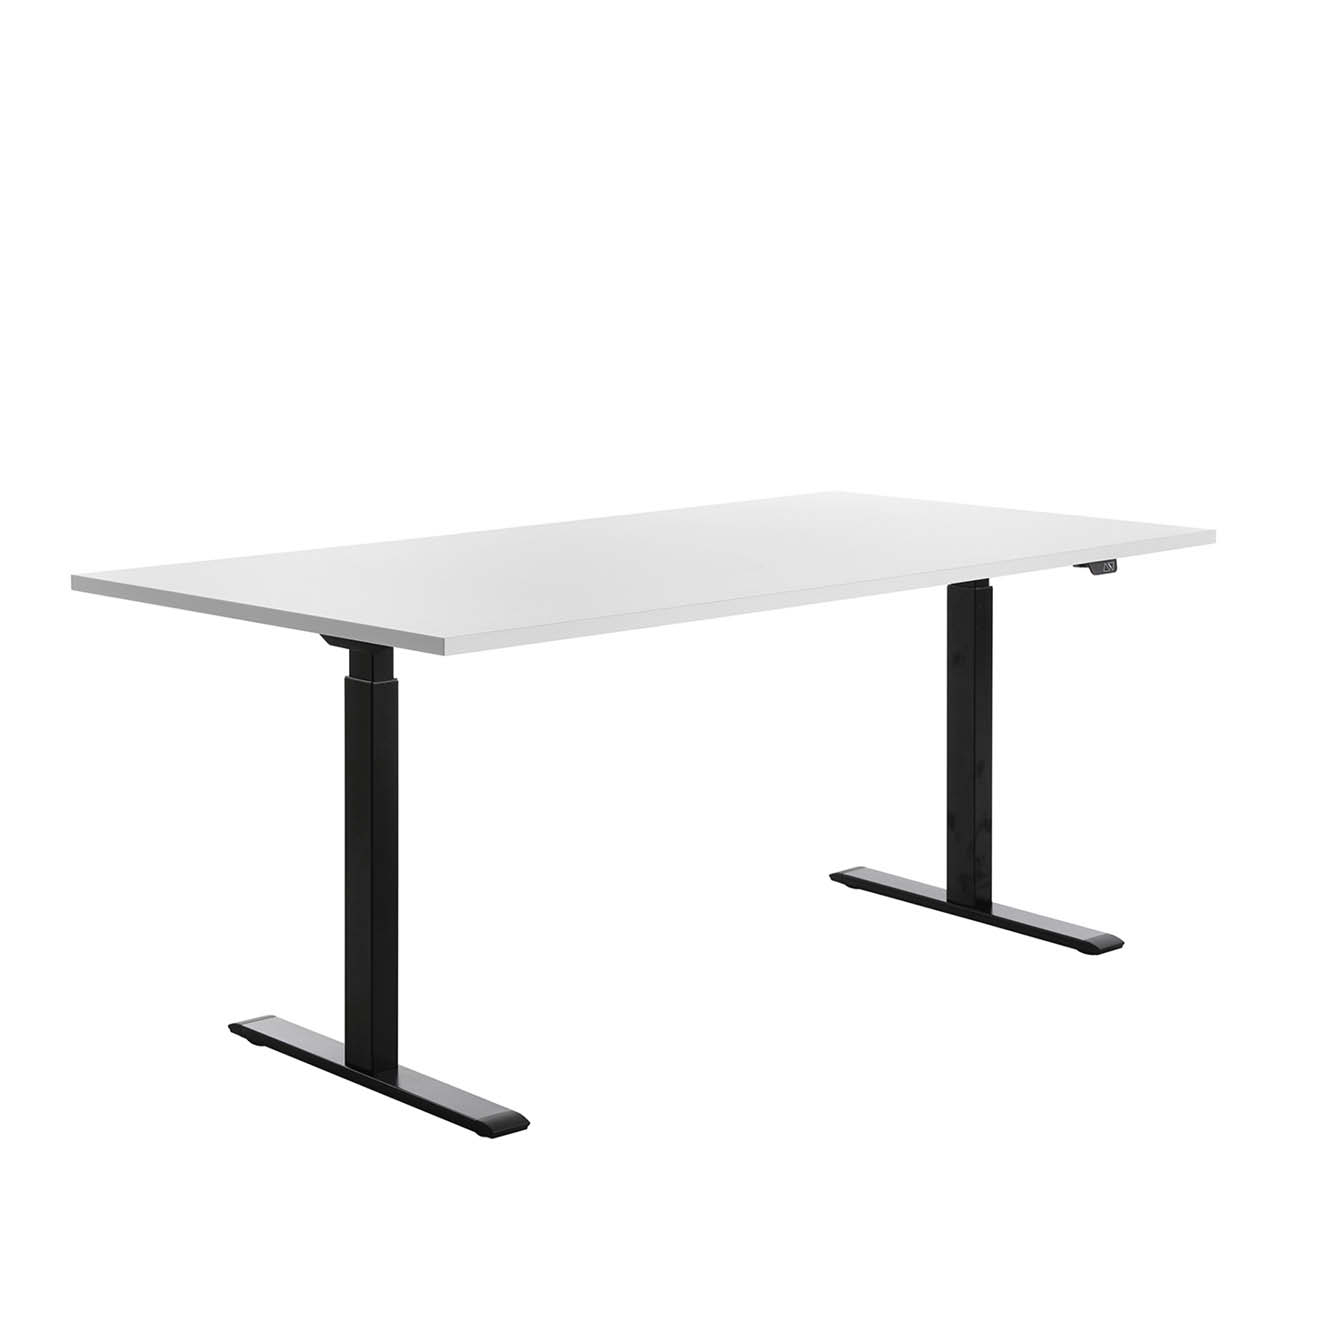 180 x 80 cm Schreibtisch Topstar Ergo E-Table höhenverstellbar - schwarz, weiss